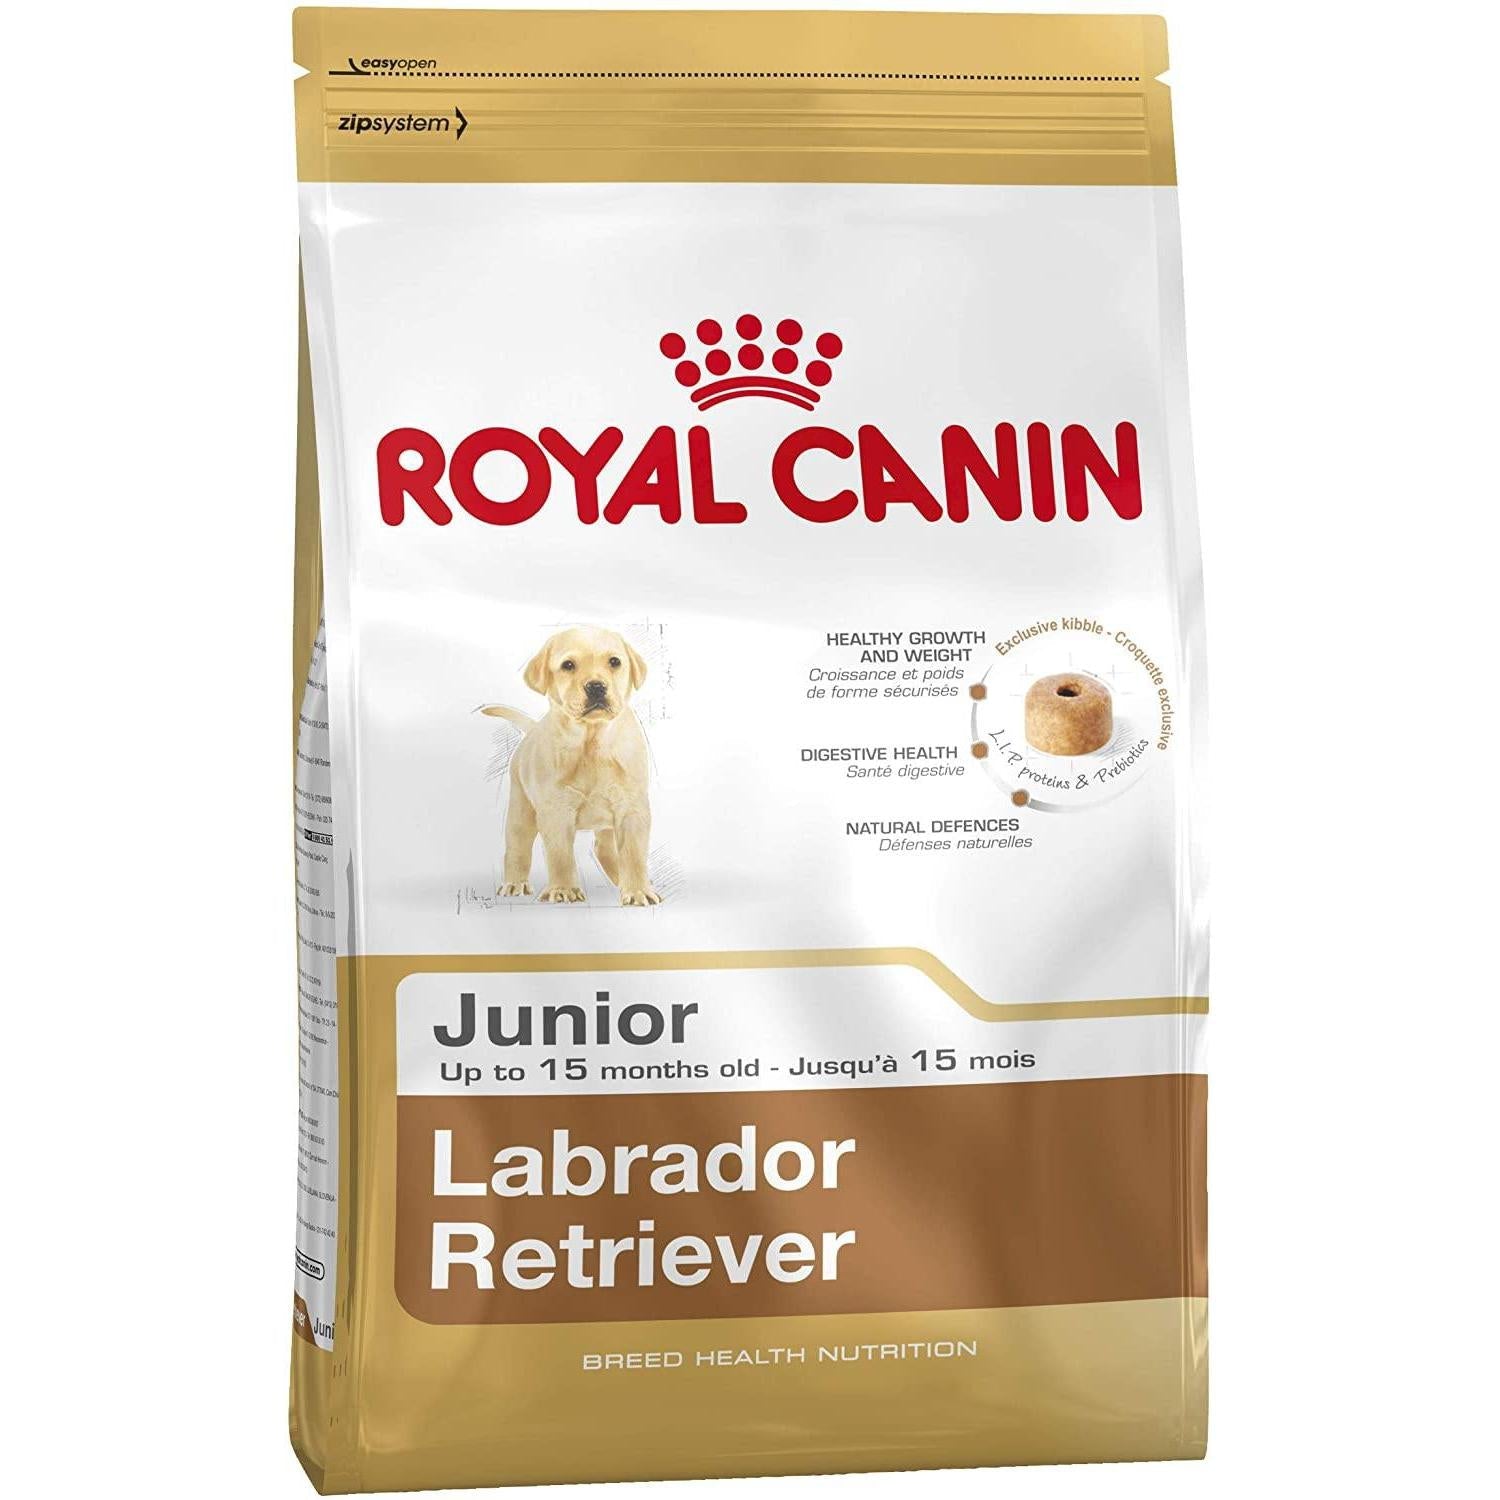 Royal canin Labrador Retriever -  Junior 3 Kg